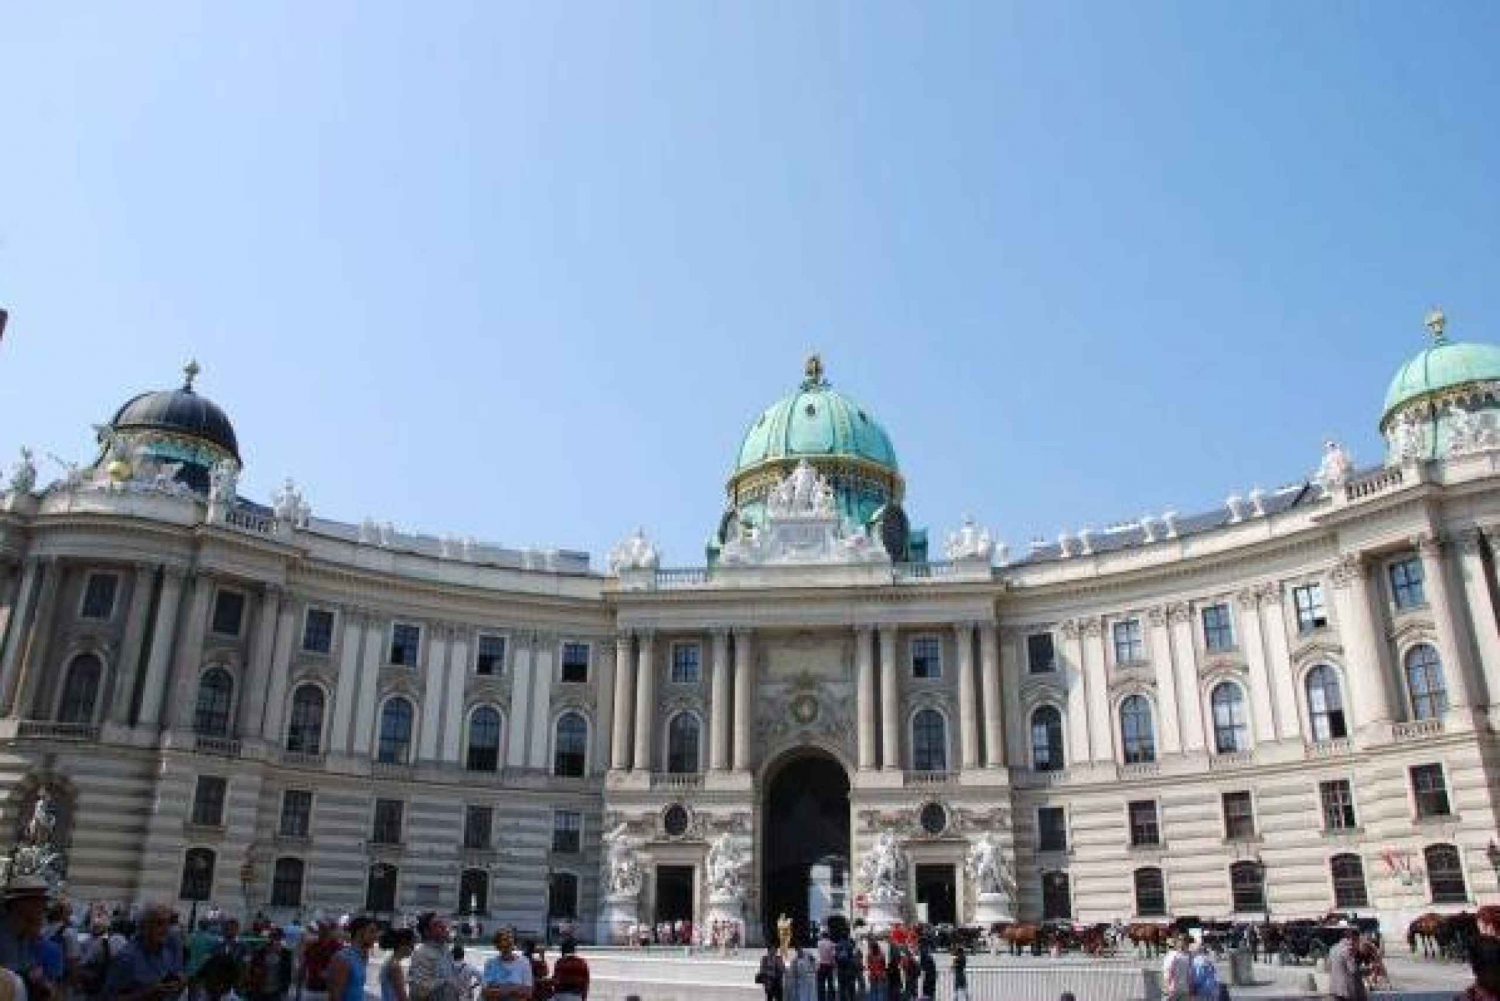 Wenen: historische bezienswaardighedentour van 2 uur